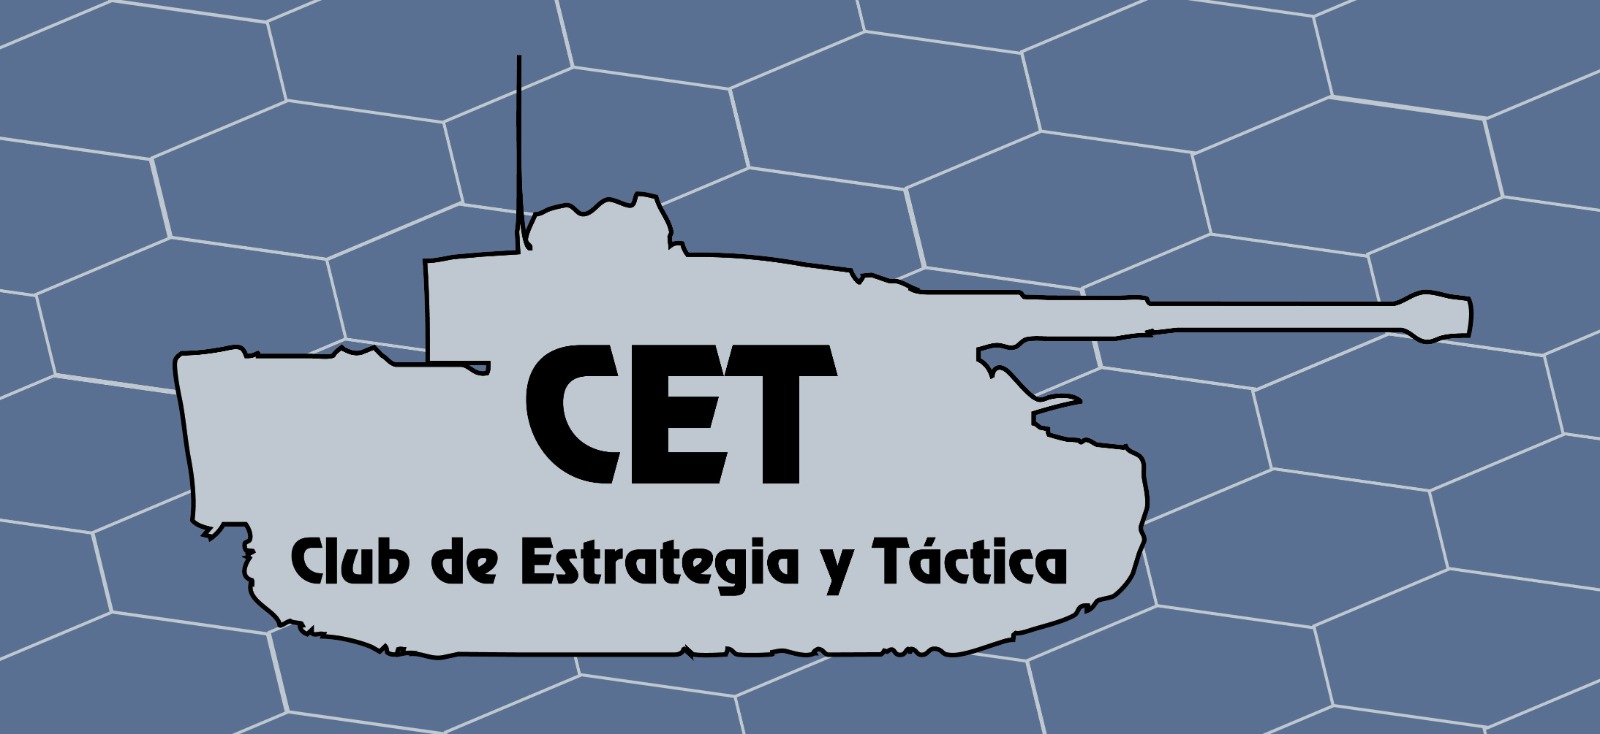 Club de Estrategia y Táctica (CET)